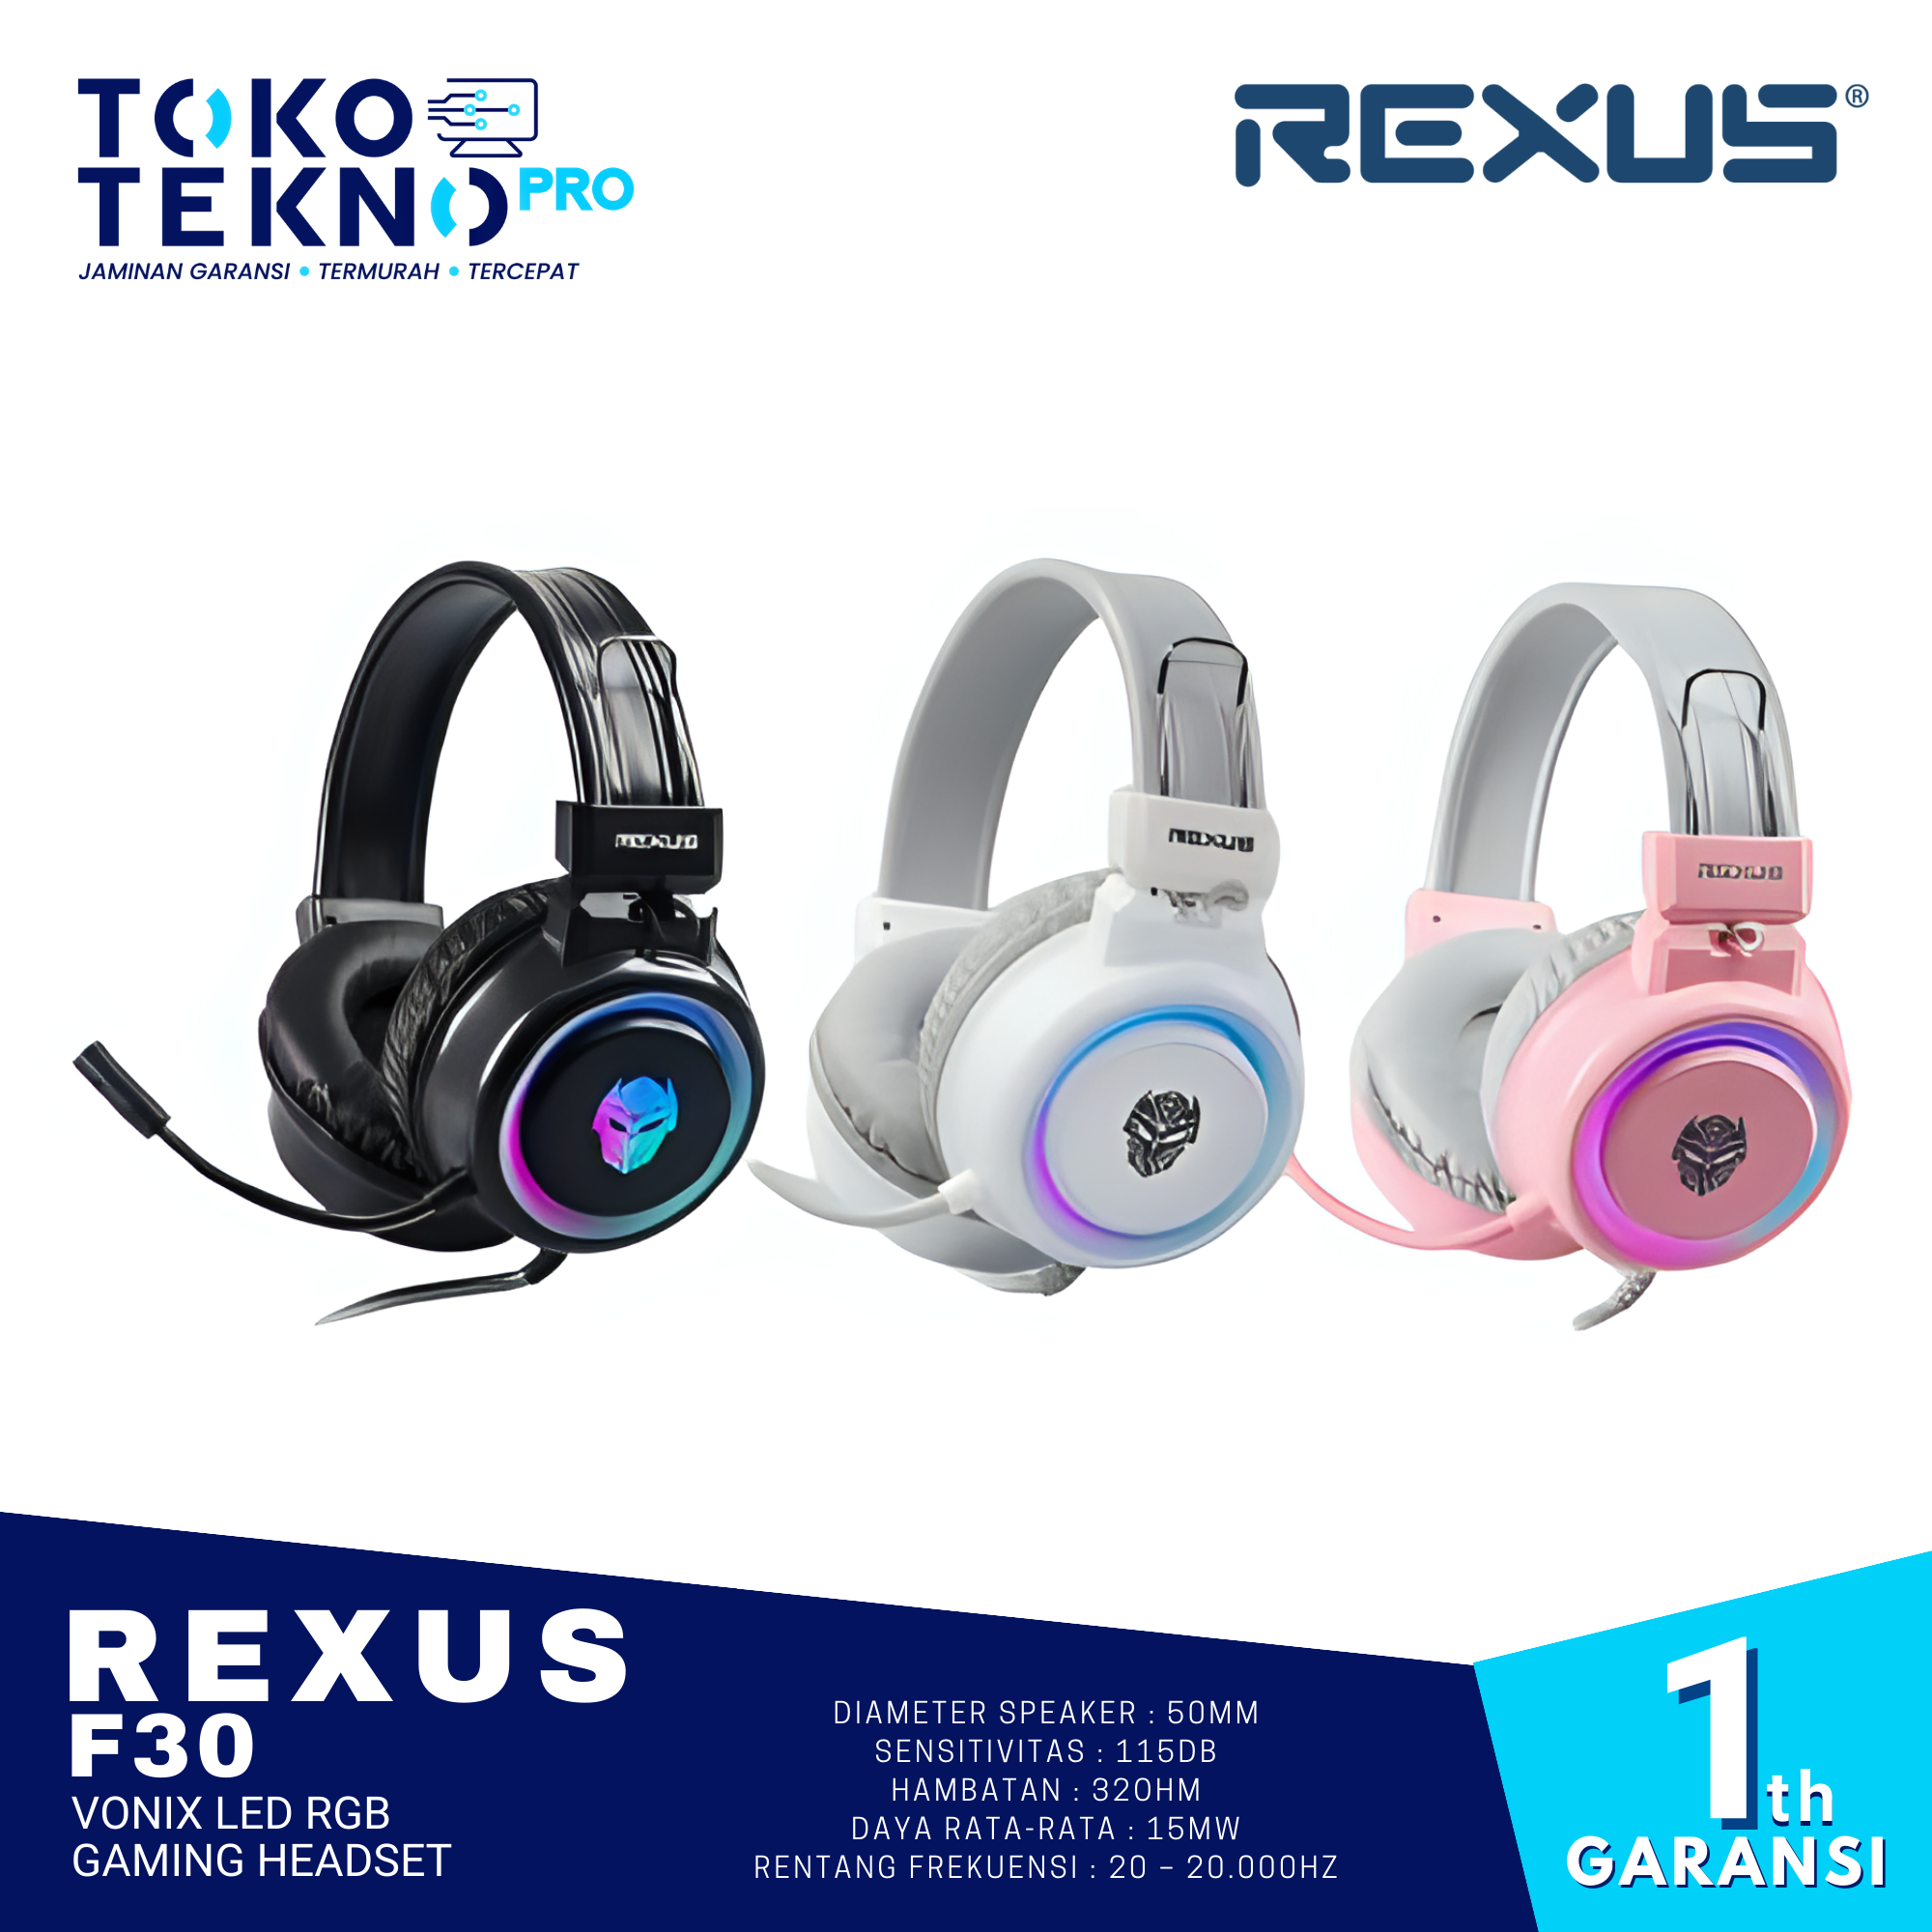 Rexus F30 Vonix LED RGB Gaming Headset